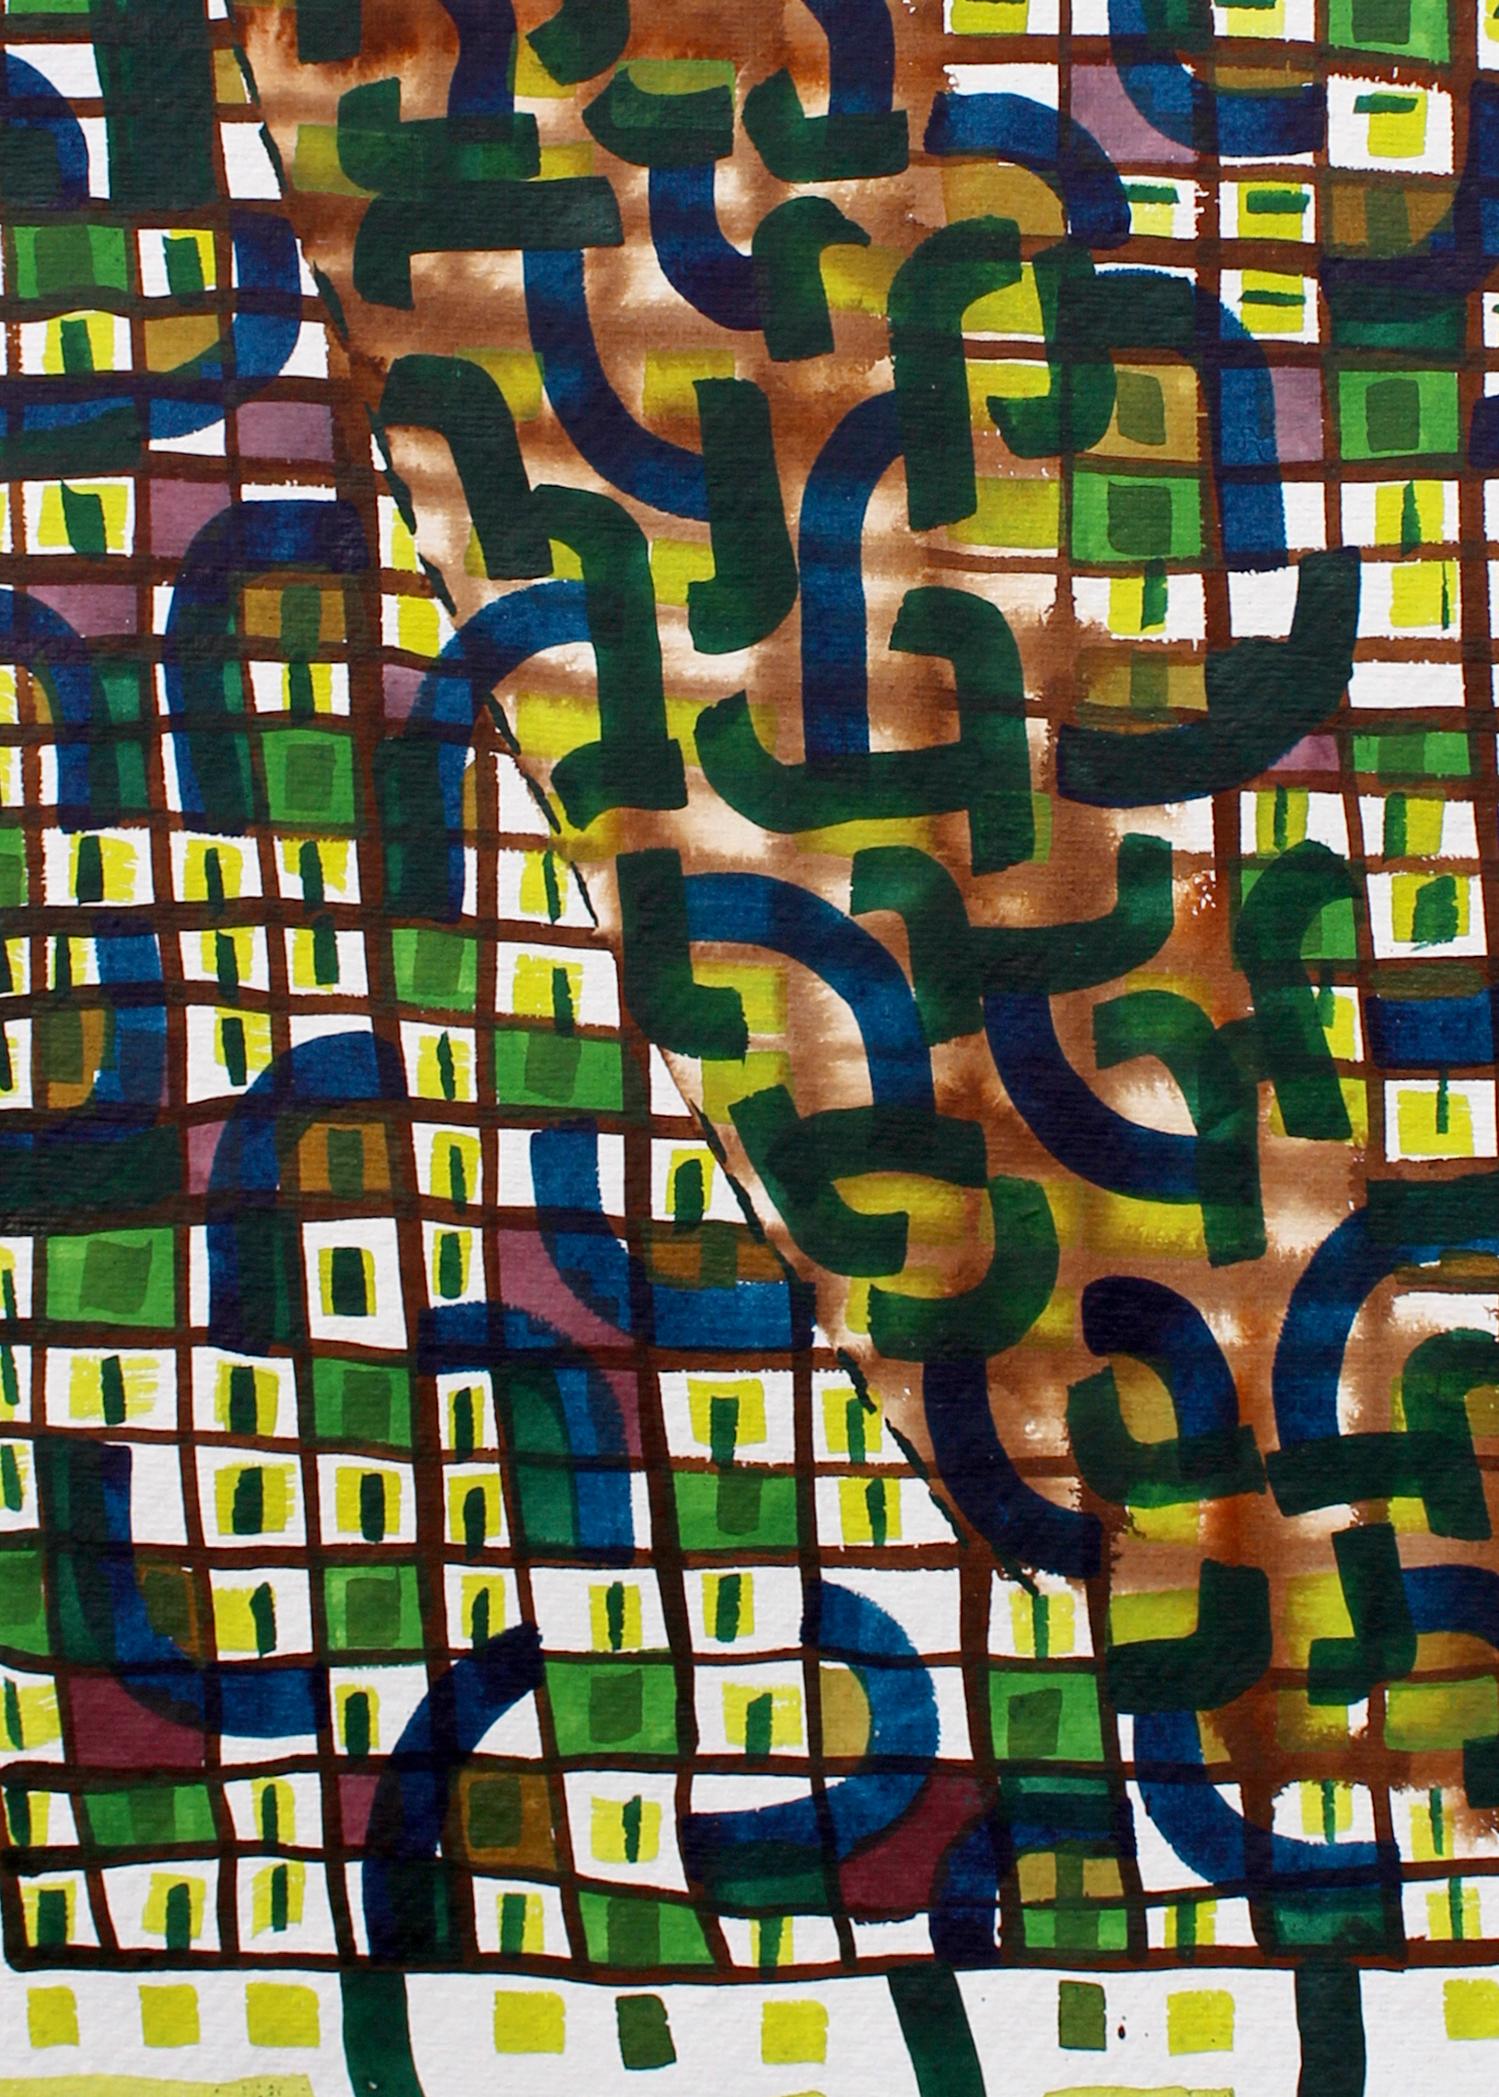 Green Blocks, Nicky Marais, Ink and acrylic paint on paper, abstract - Abstract Art by Nicky Marais 